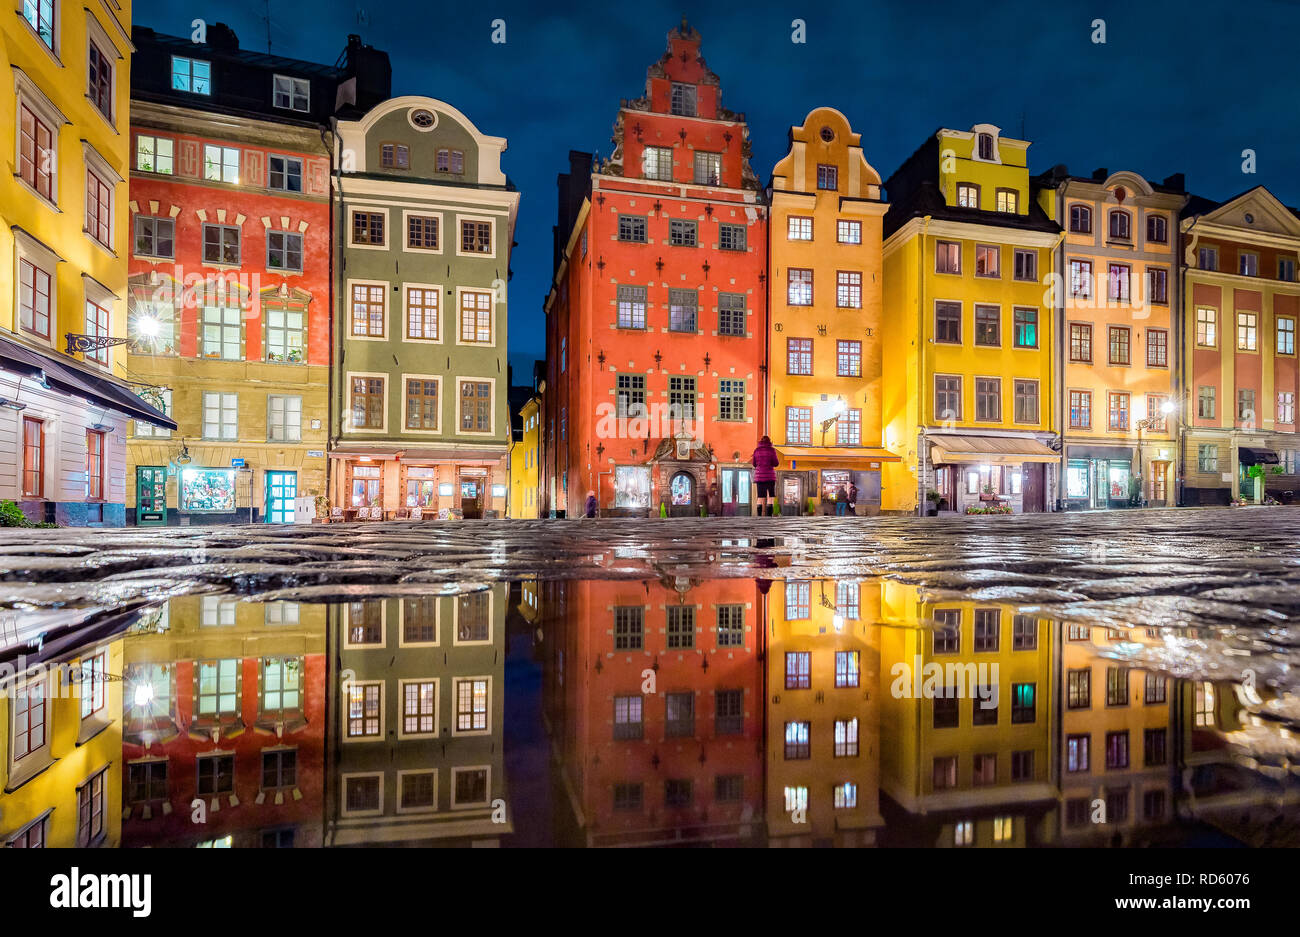 L'affichage classique de maisons colorées à la place Stortorget célèbre dans le quartier historique de Stockholm, Gamla Stan (vieille ville) se reflétant dans une flaque d'eau la nuit, centra Banque D'Images